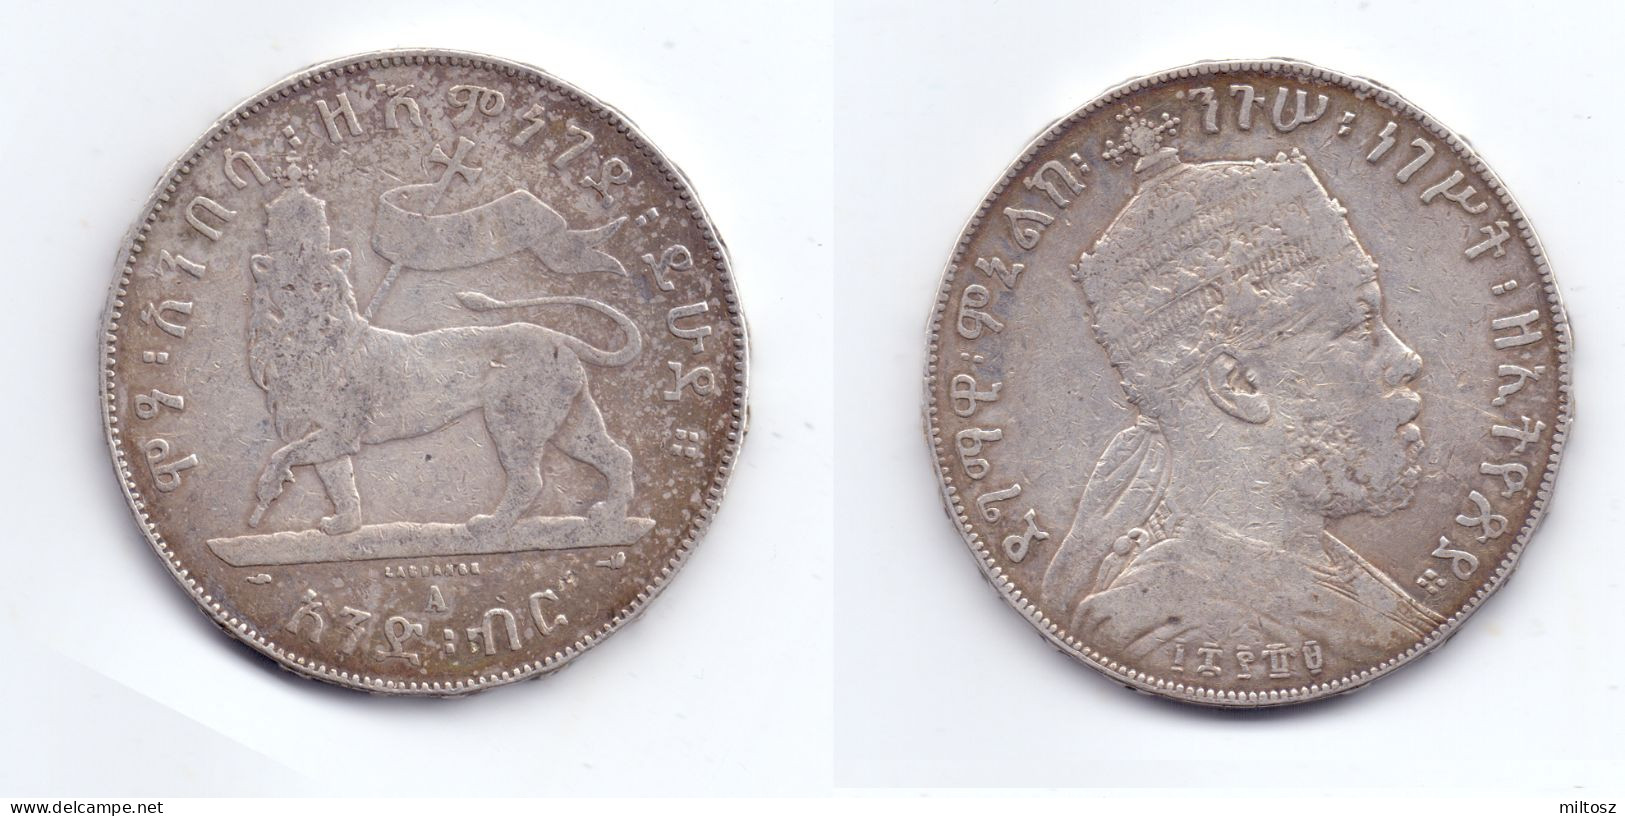 Ethiopia 1 Birr 1897 (EE1889) - Ethiopië